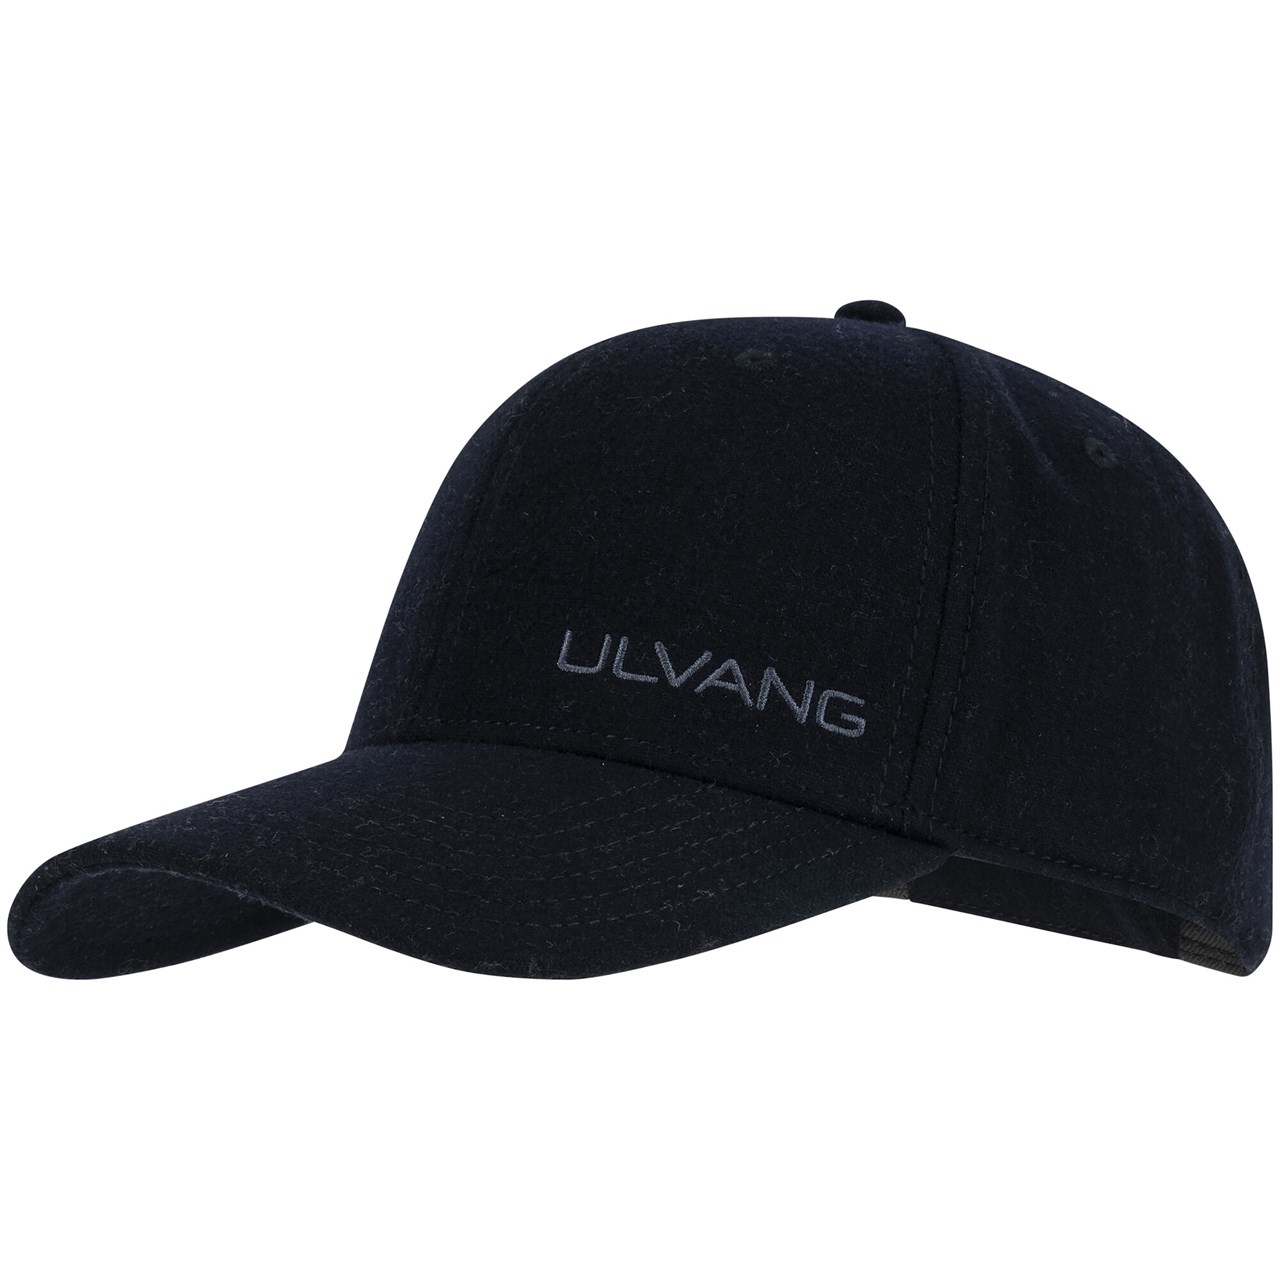 Produktbild von Ulvang Logo Cap - New Navy